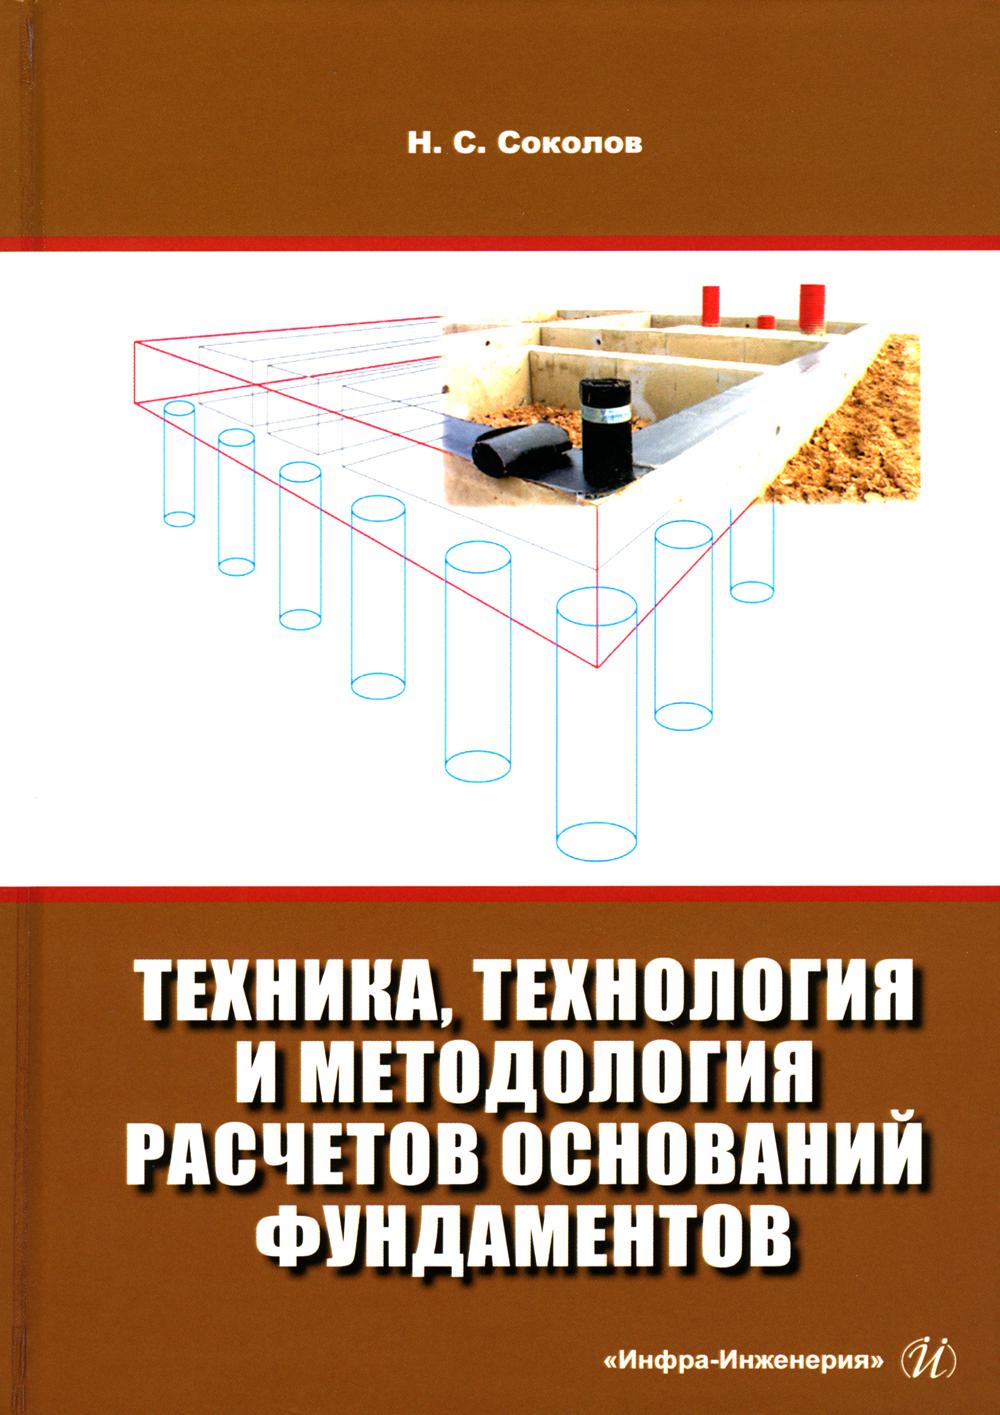 фото Книга техника, технология и методология расчетов оснований фундаментов инфра-инженерия